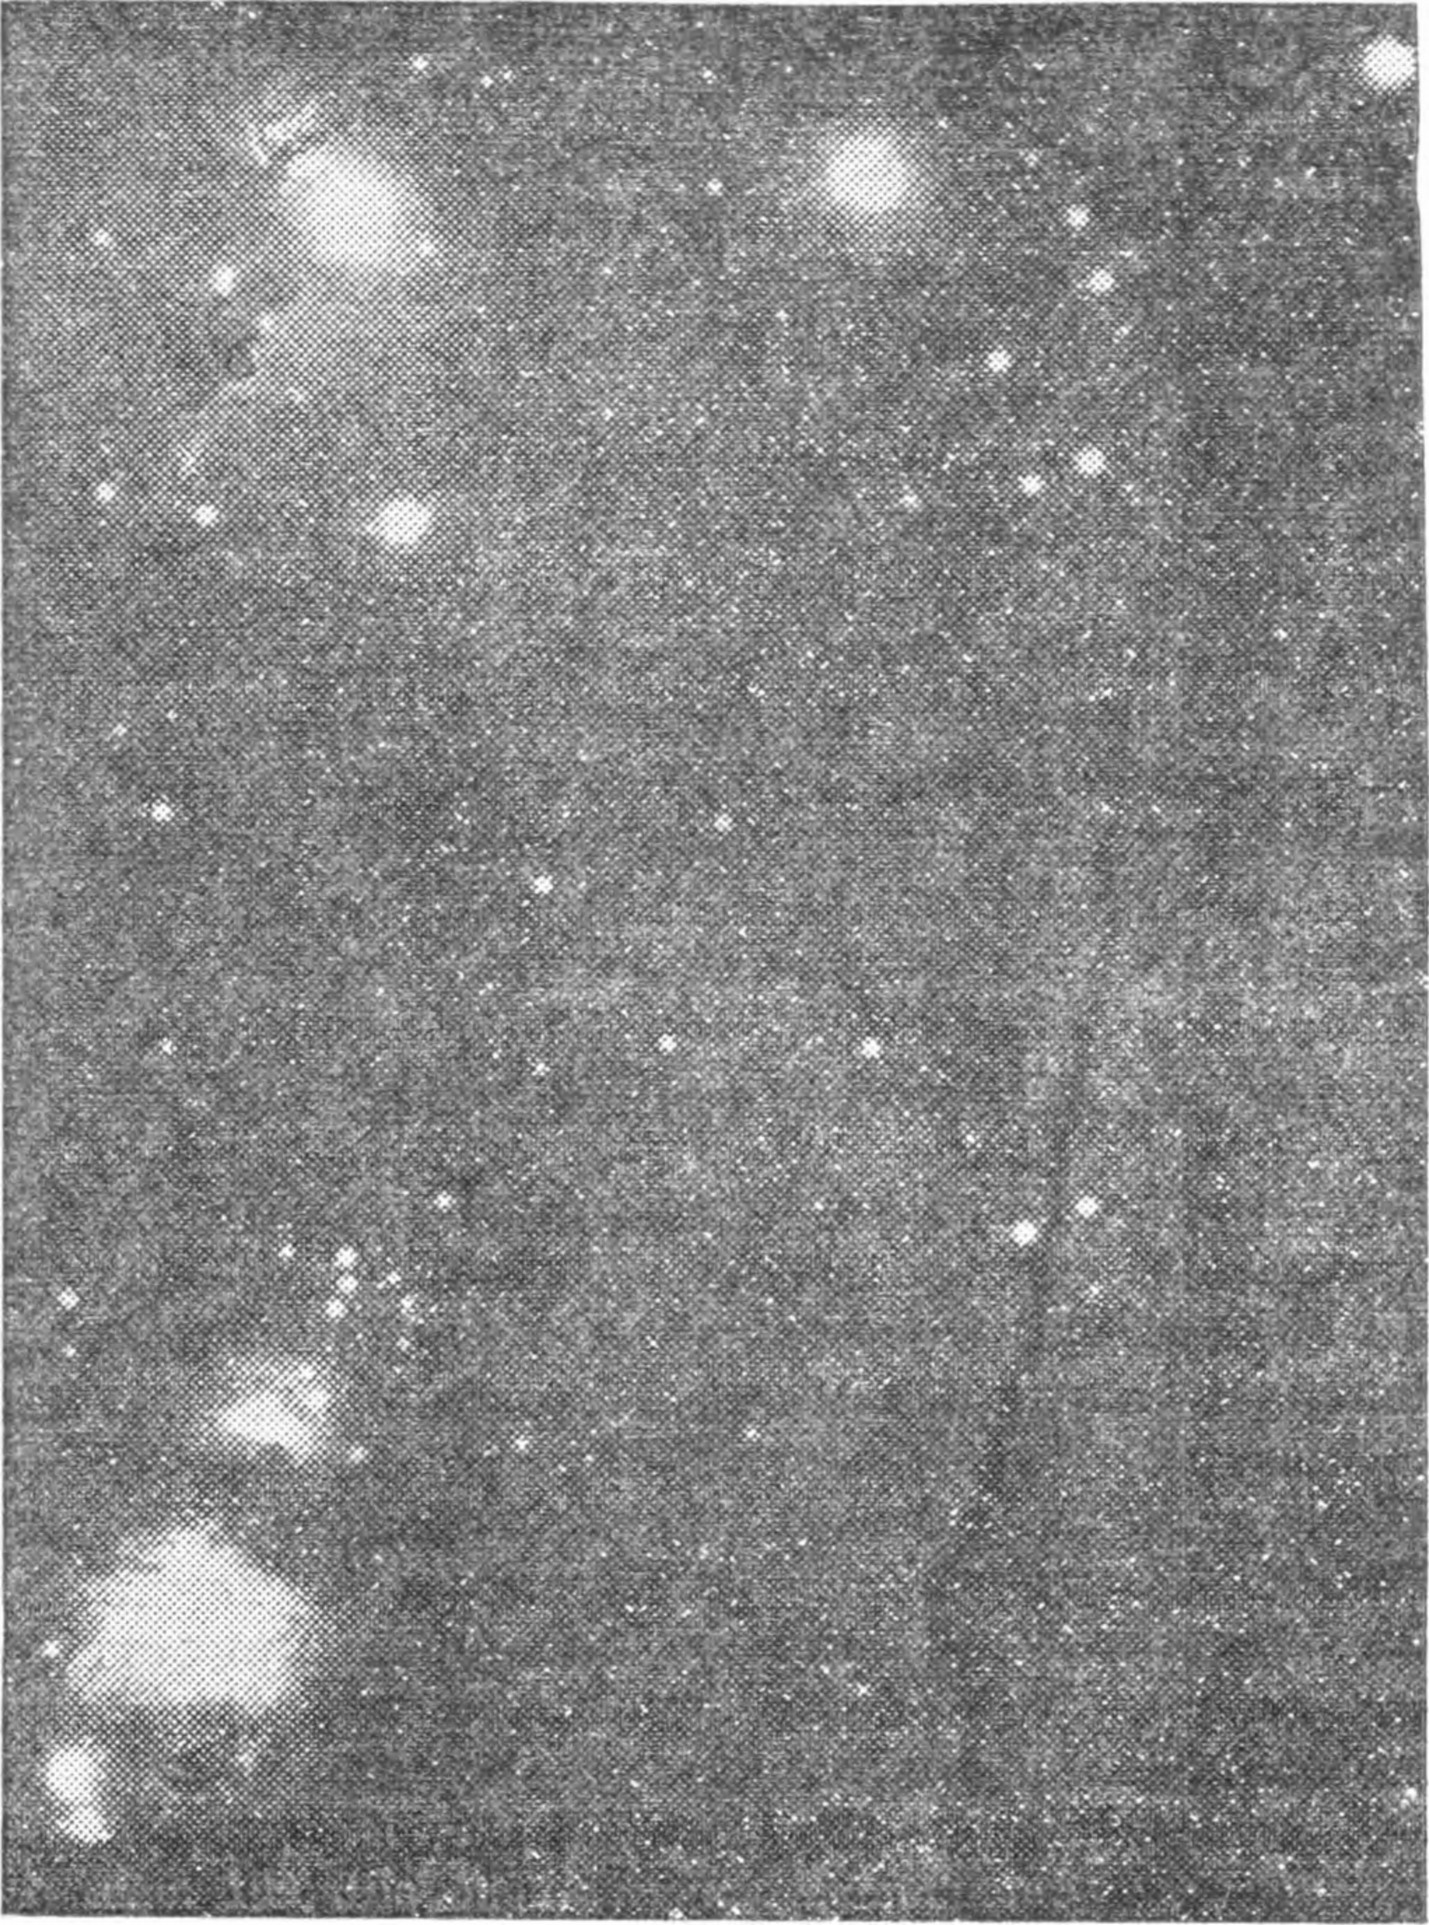 Рис. 172. Диффузные туманности в созвездии Ориона